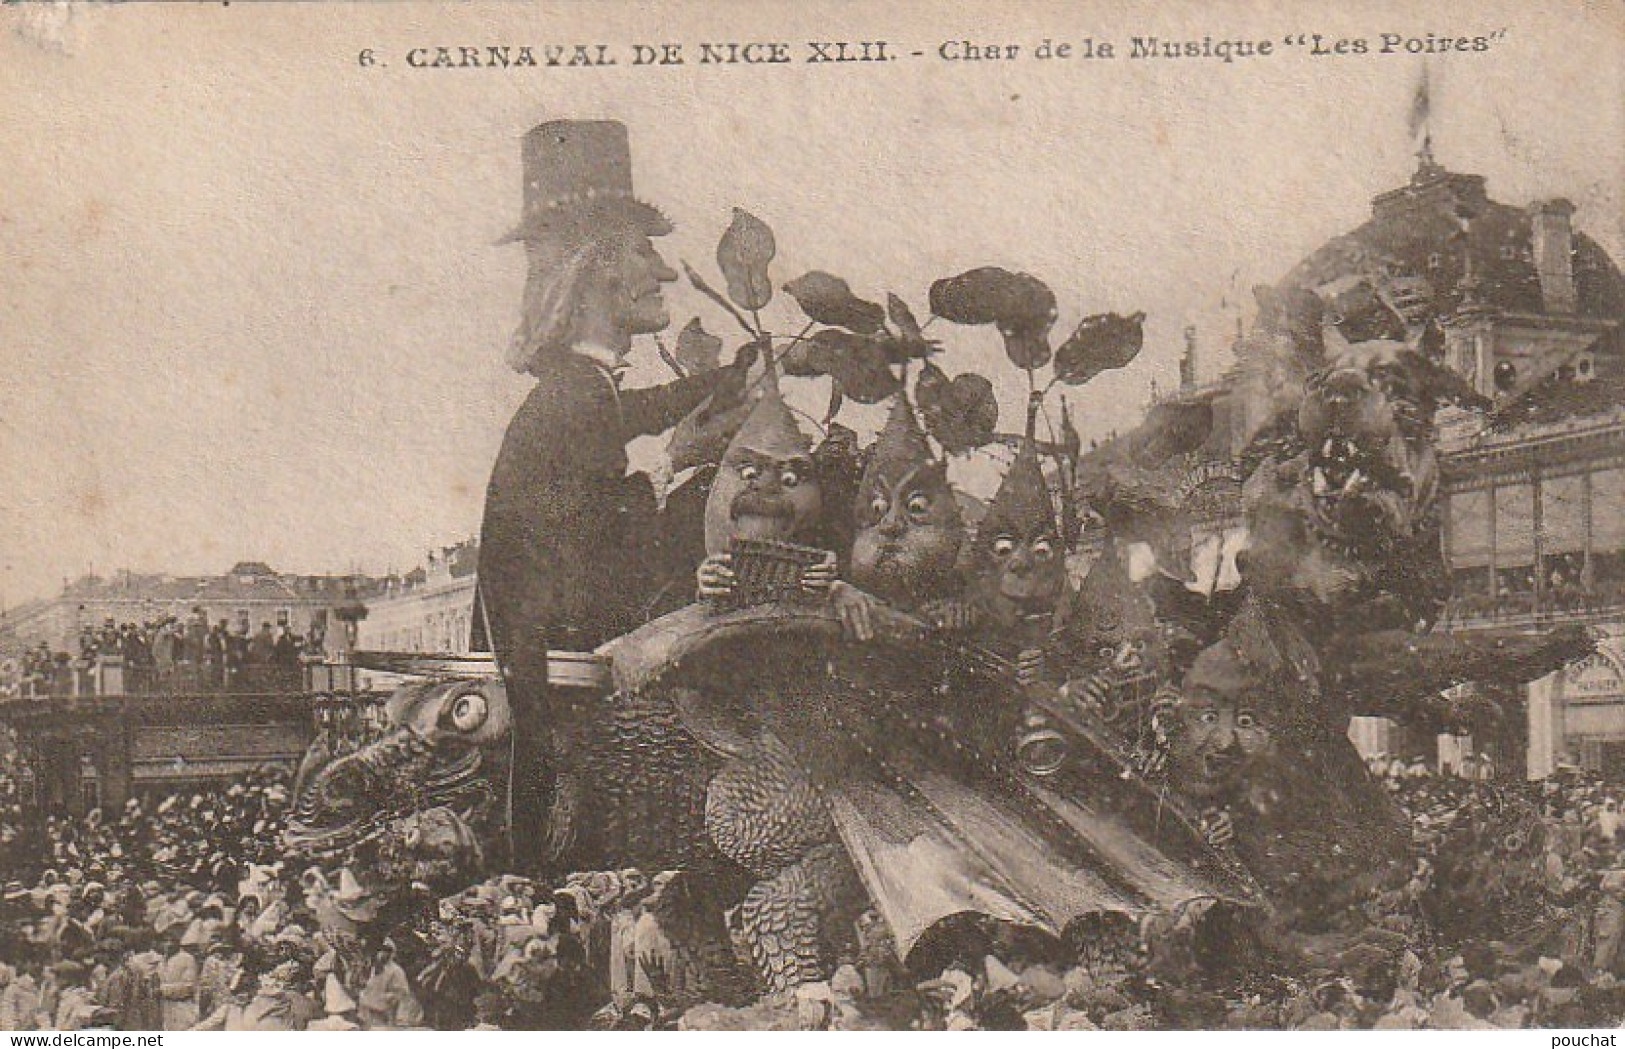 XXX -(06) CARNAVAL DE NICE XLII - CHAR DE LA MUSIQUE " LES POIRES " - TAMPON MARCELLINI & Cie , NICE - 2 SCANS - Carnival